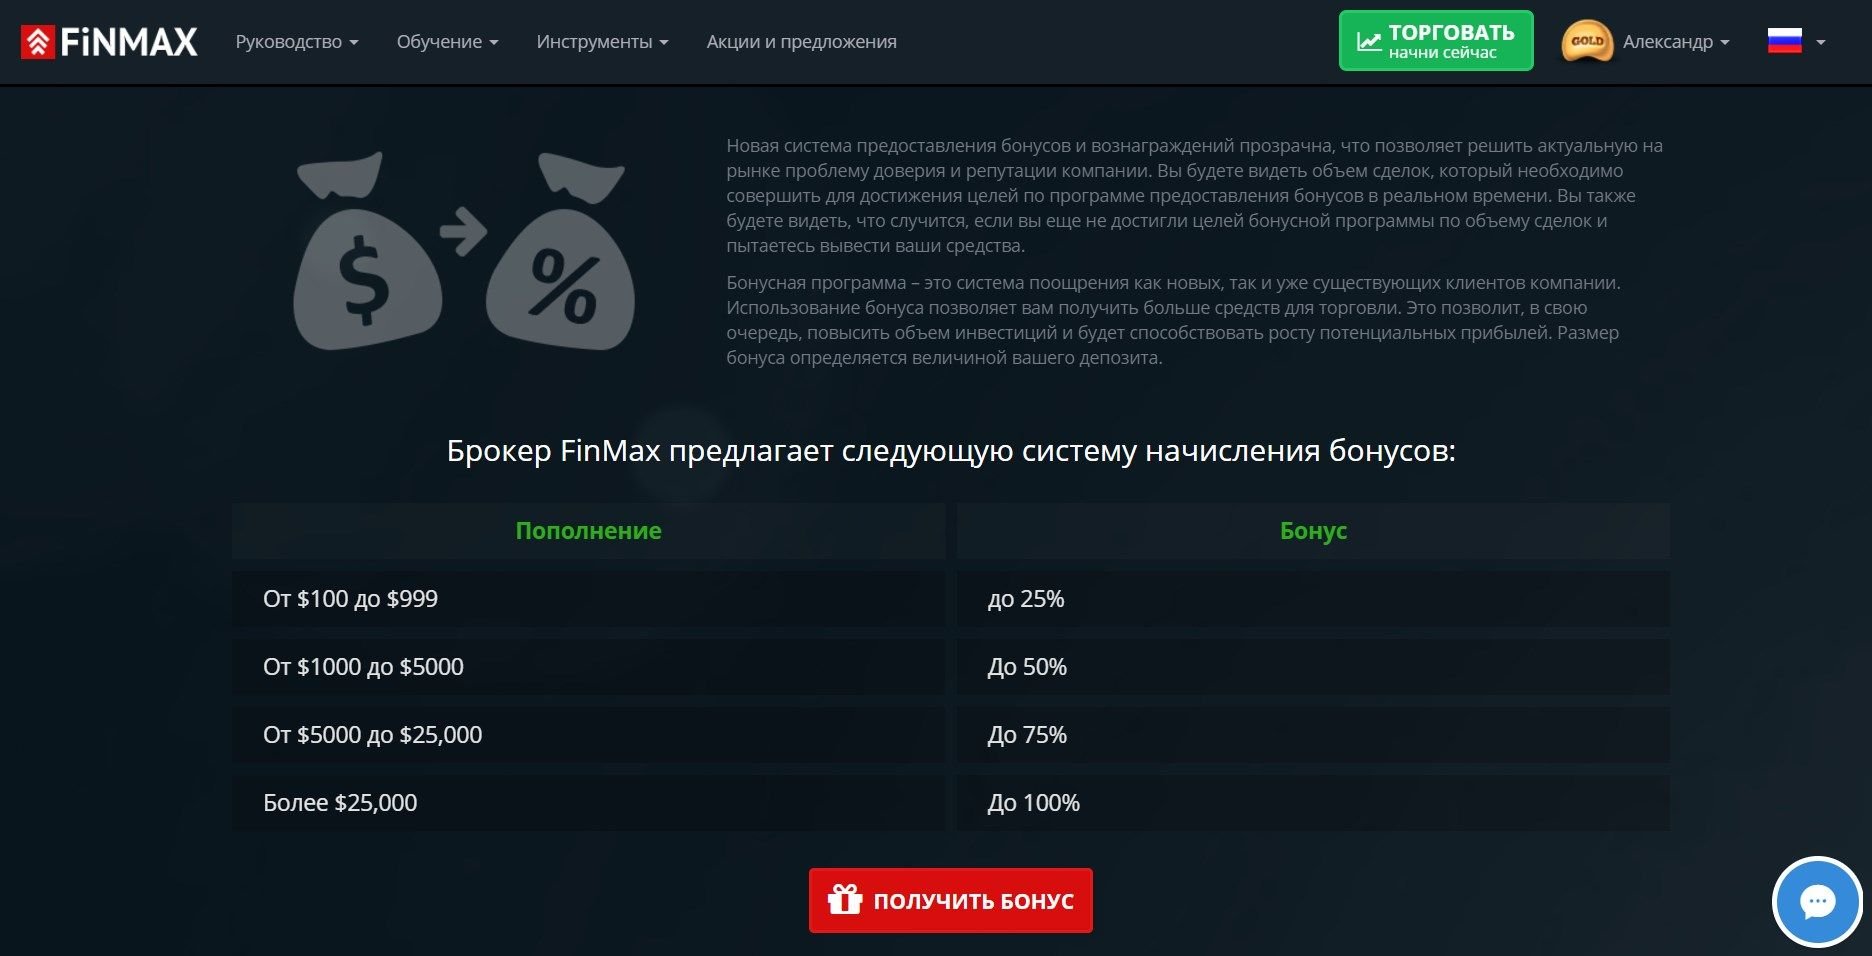 Официальный сайт FiNMAX предлагает множество выгодных акций